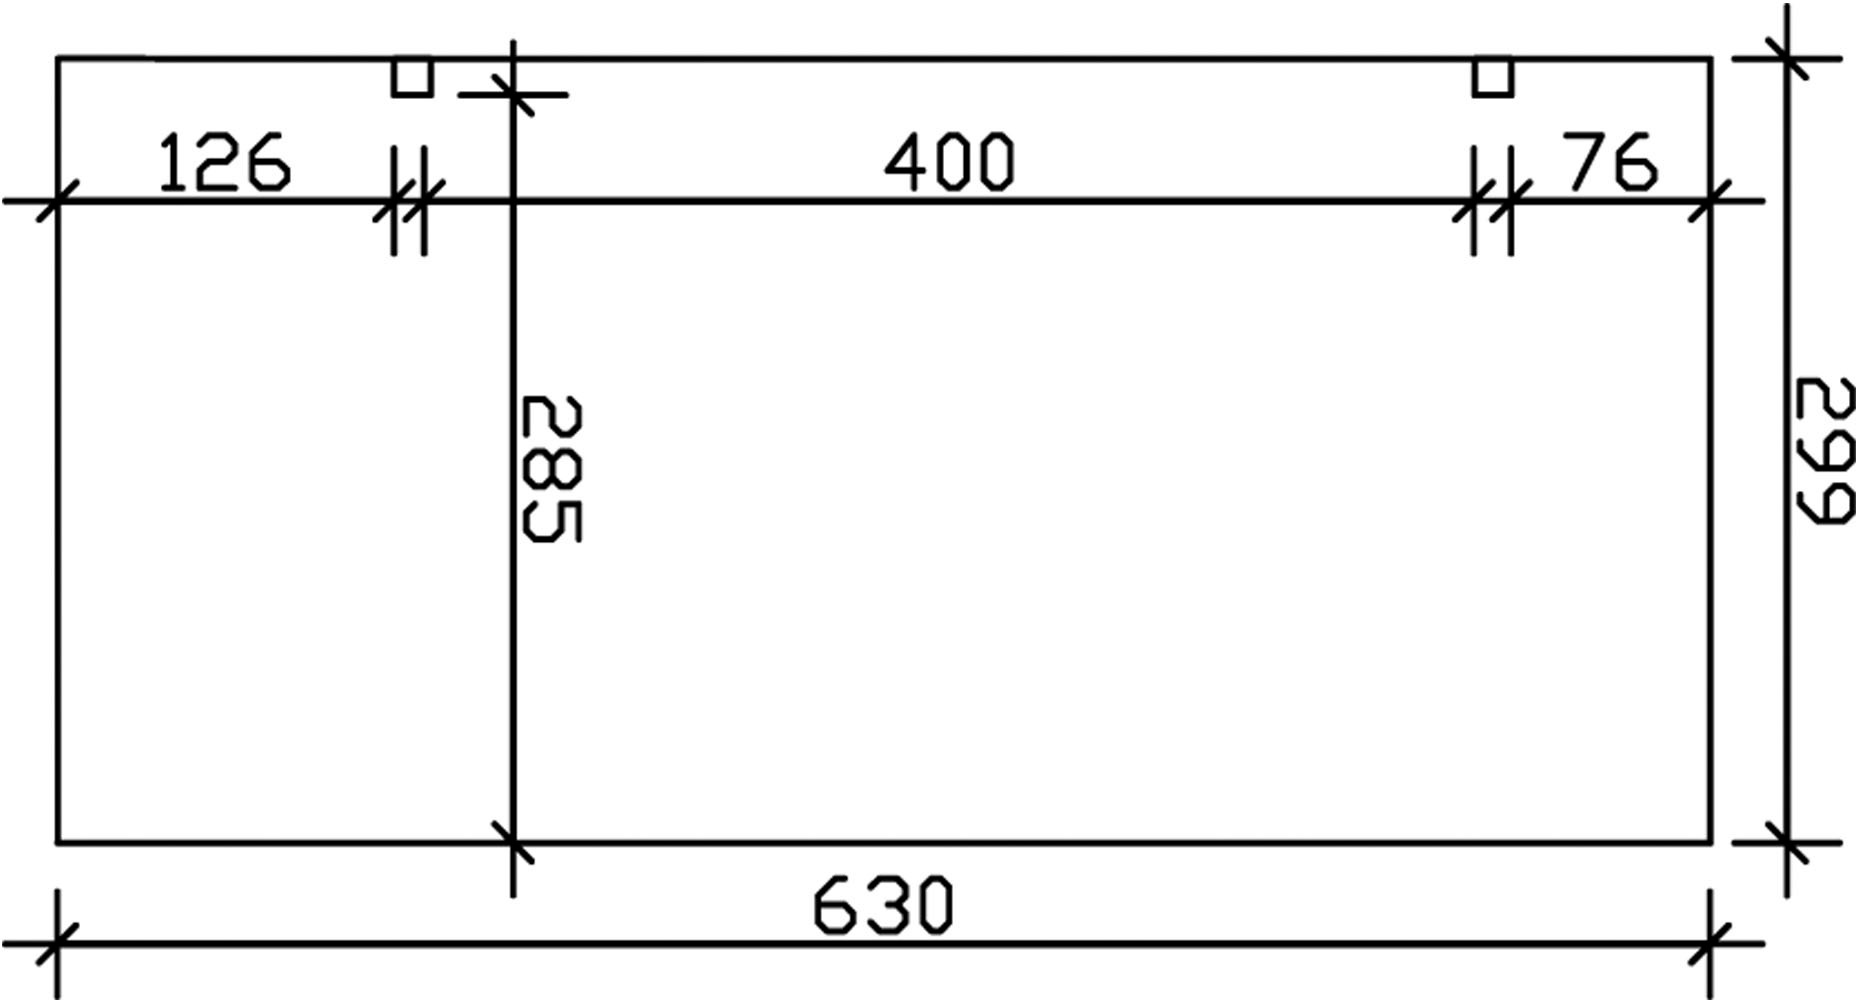 Skanholz Einzelcarport »Schwaben«, Leimholz, Fichte, 285 cm, Nussbaum, Erweiterung, 299 x 630 cm